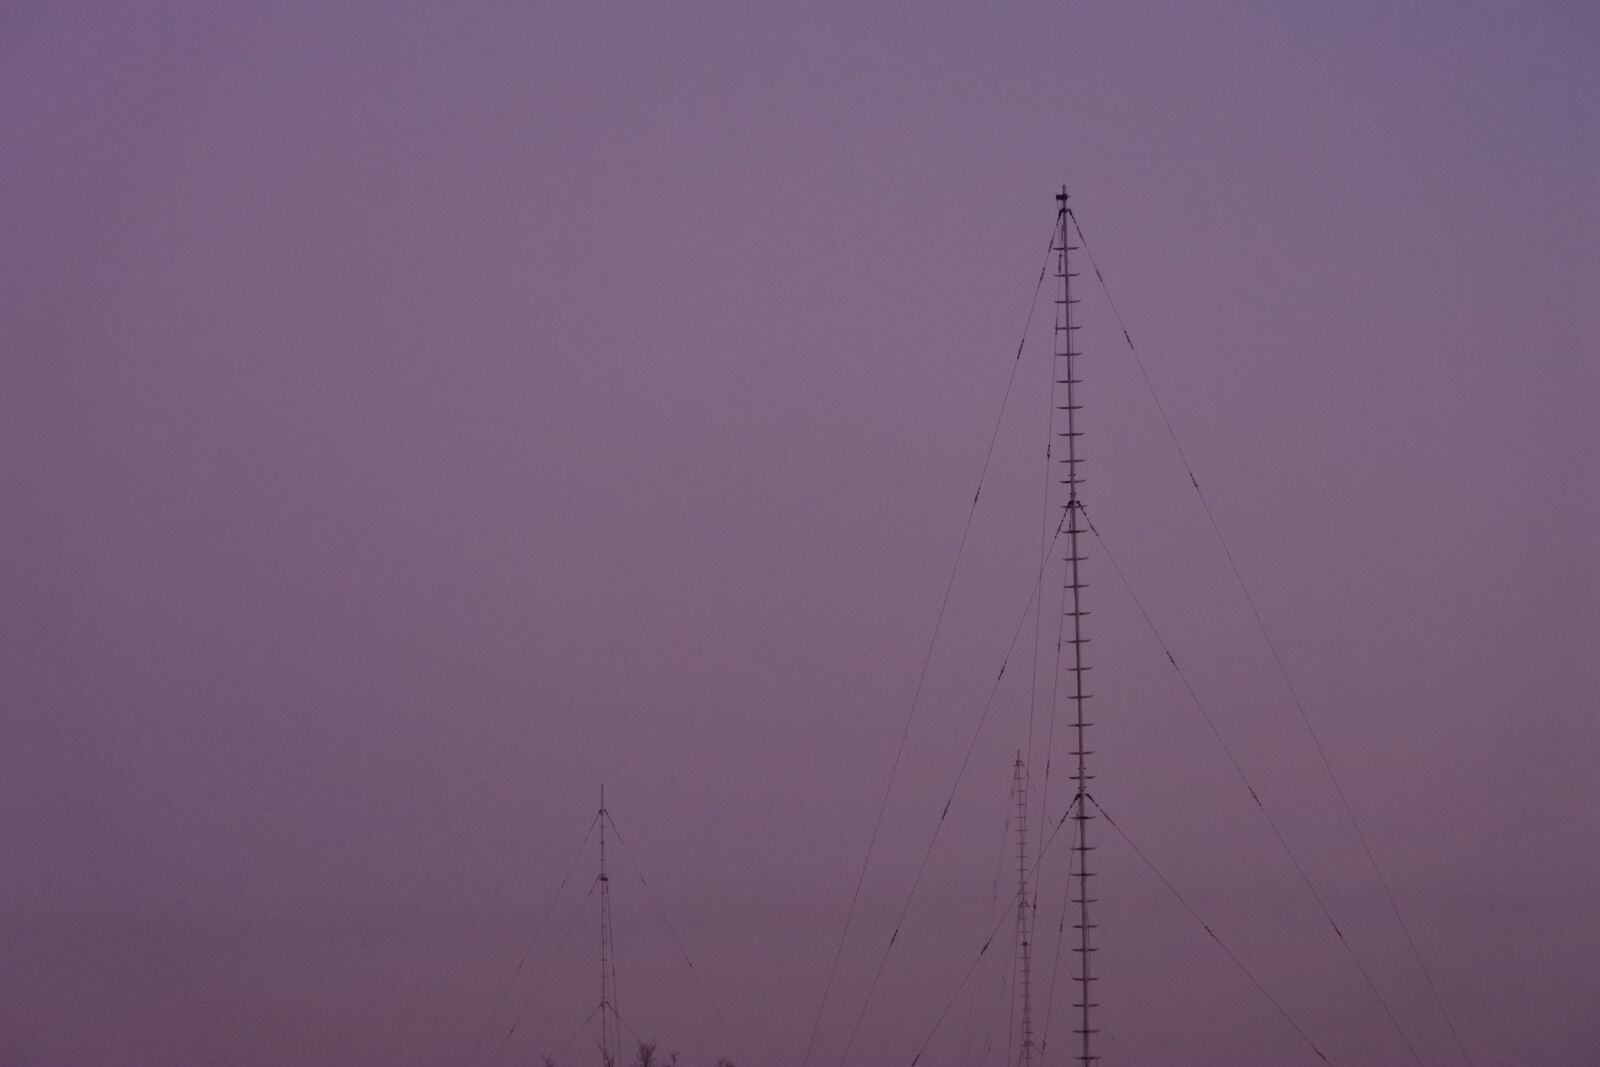 Nikon 1 J5 sample photo. Antenna, nature, towards, evening photography